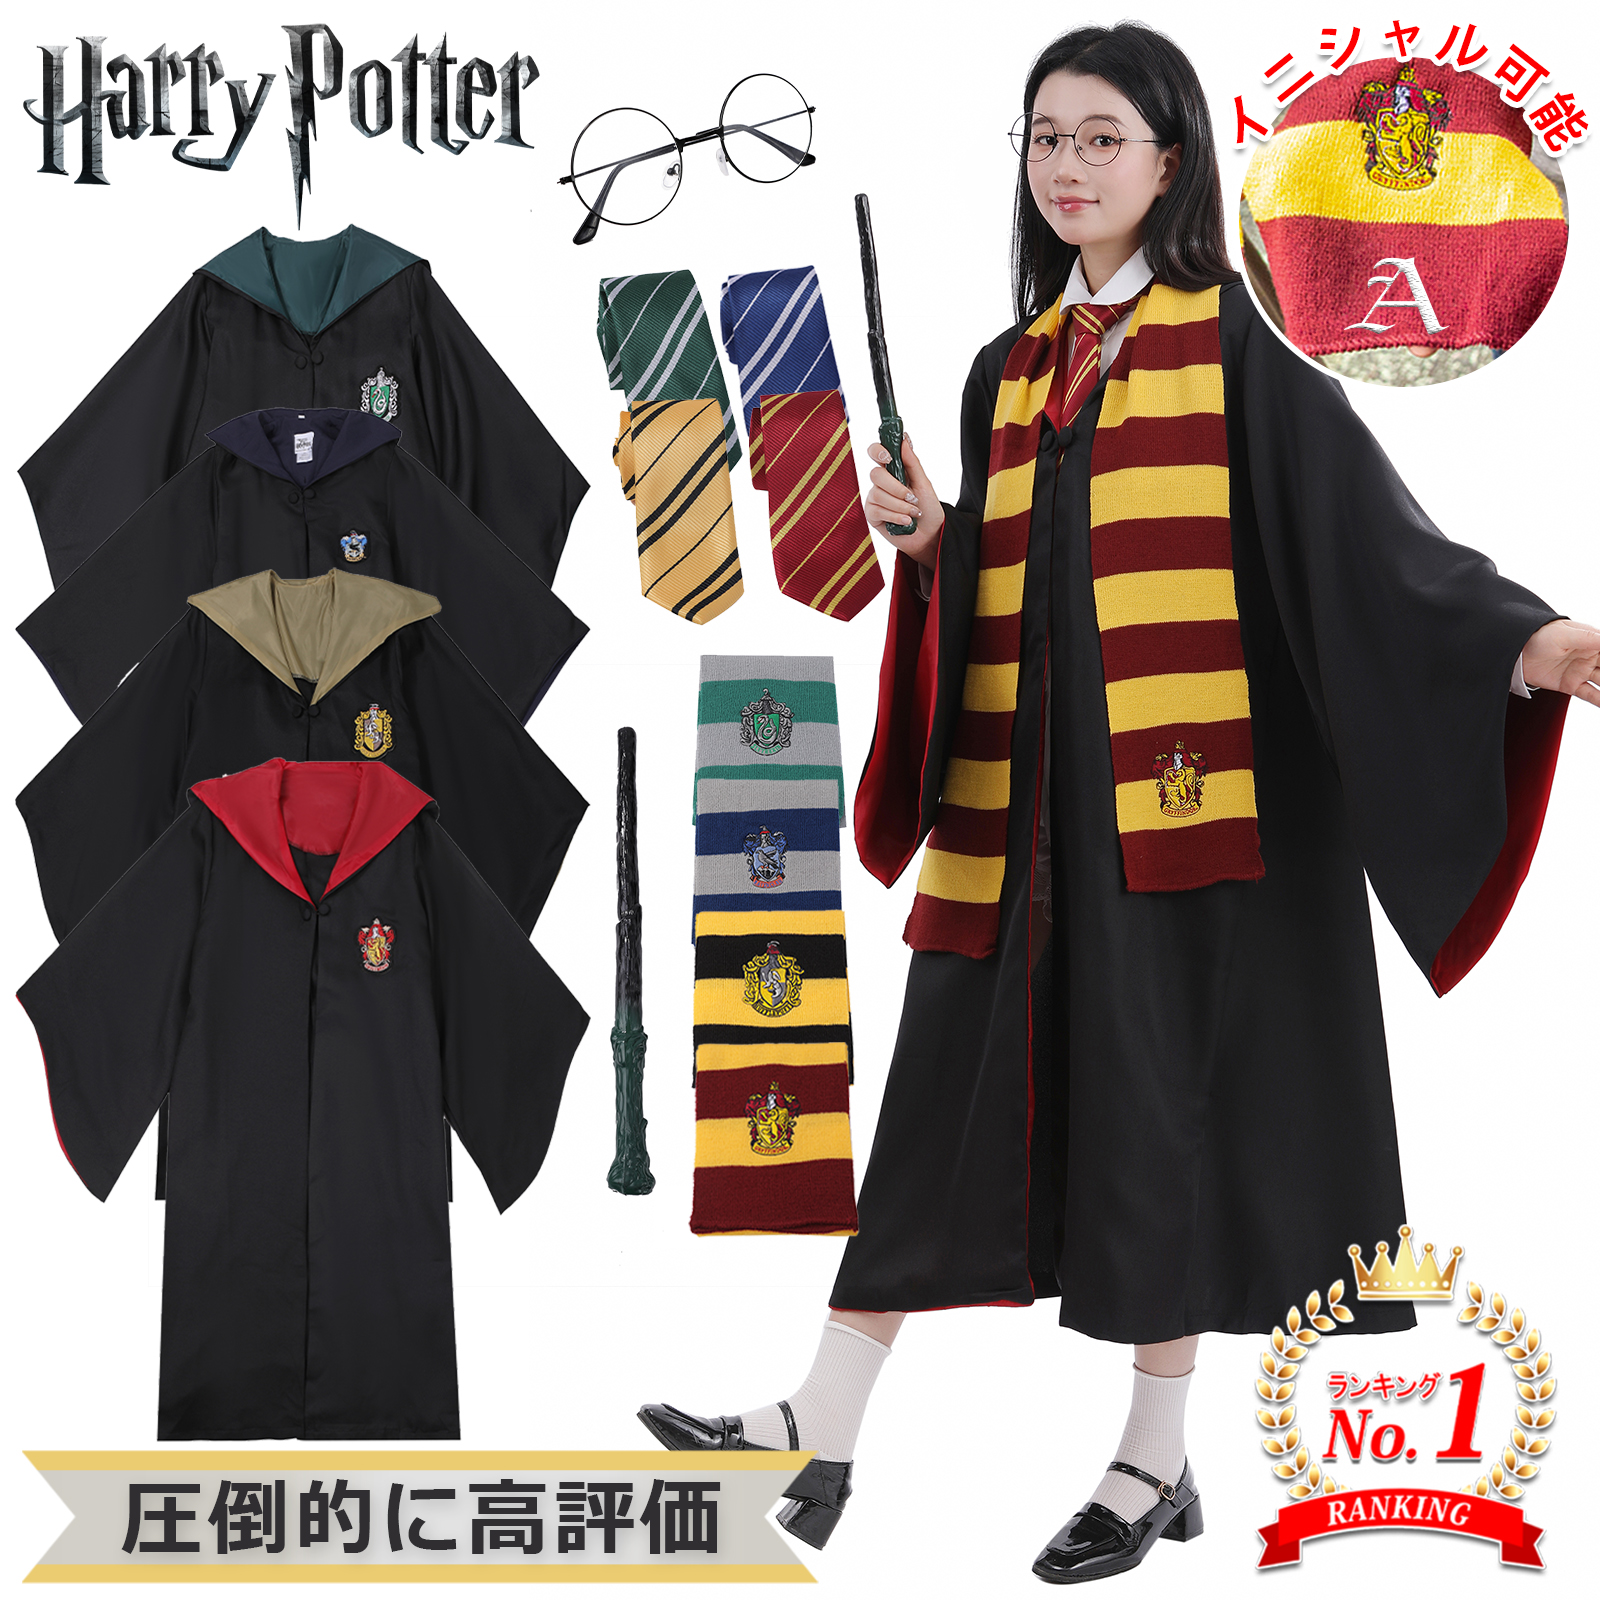  костюмированная игра Harry Potter костюм ребенок взрослый usj товары мужчина женщина low b трость ho gwa-tsu muffler костюм 